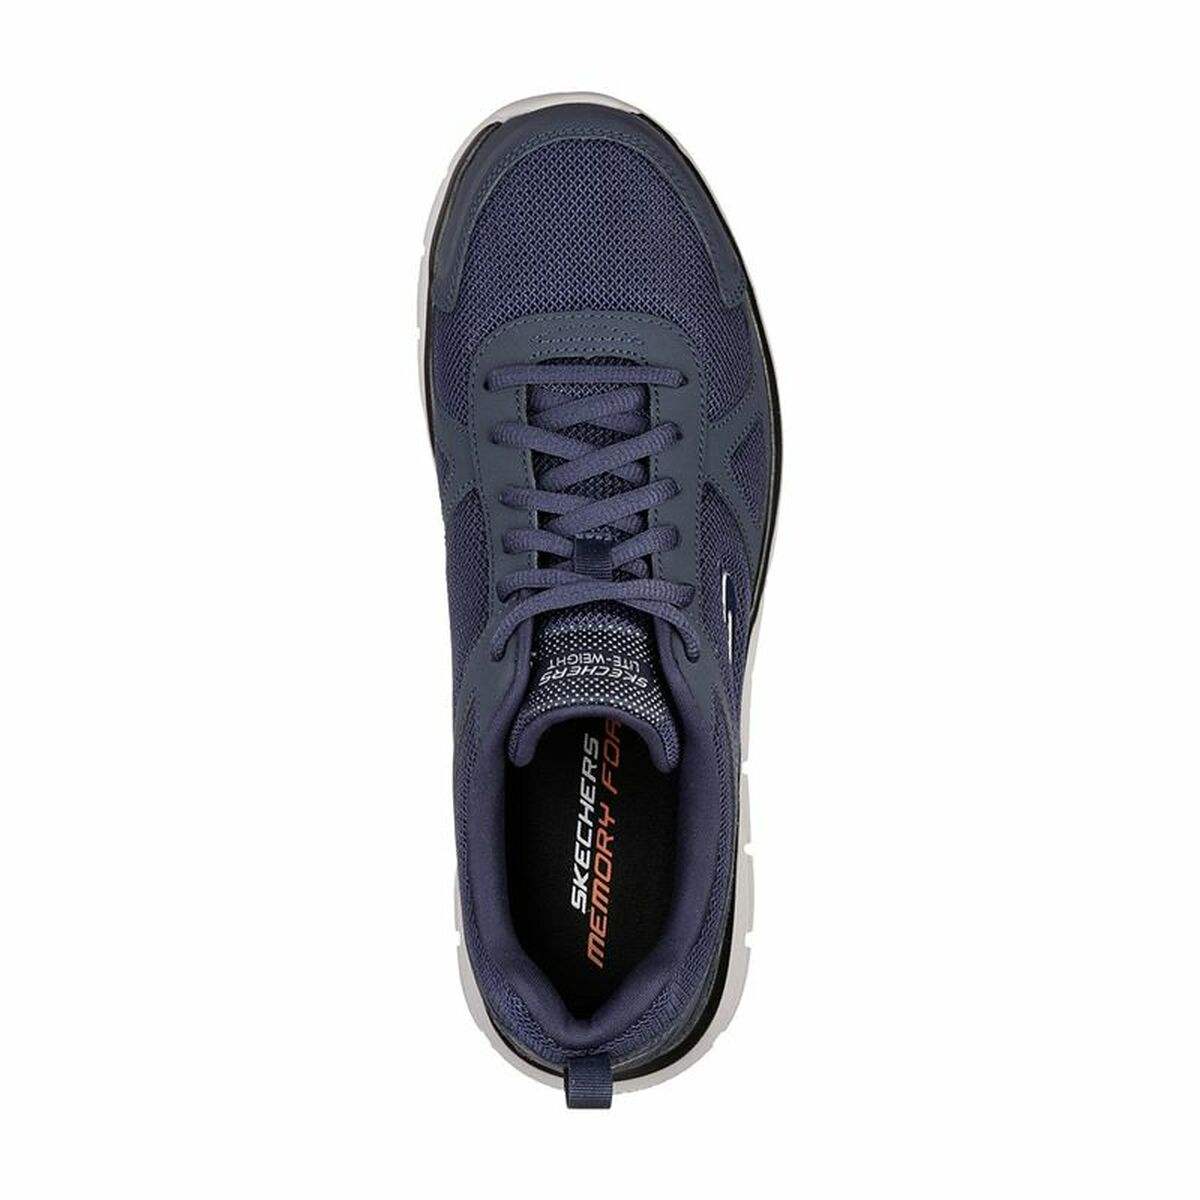 Chaussures casual homme Skechers Track - Sloric M Bleu foncé